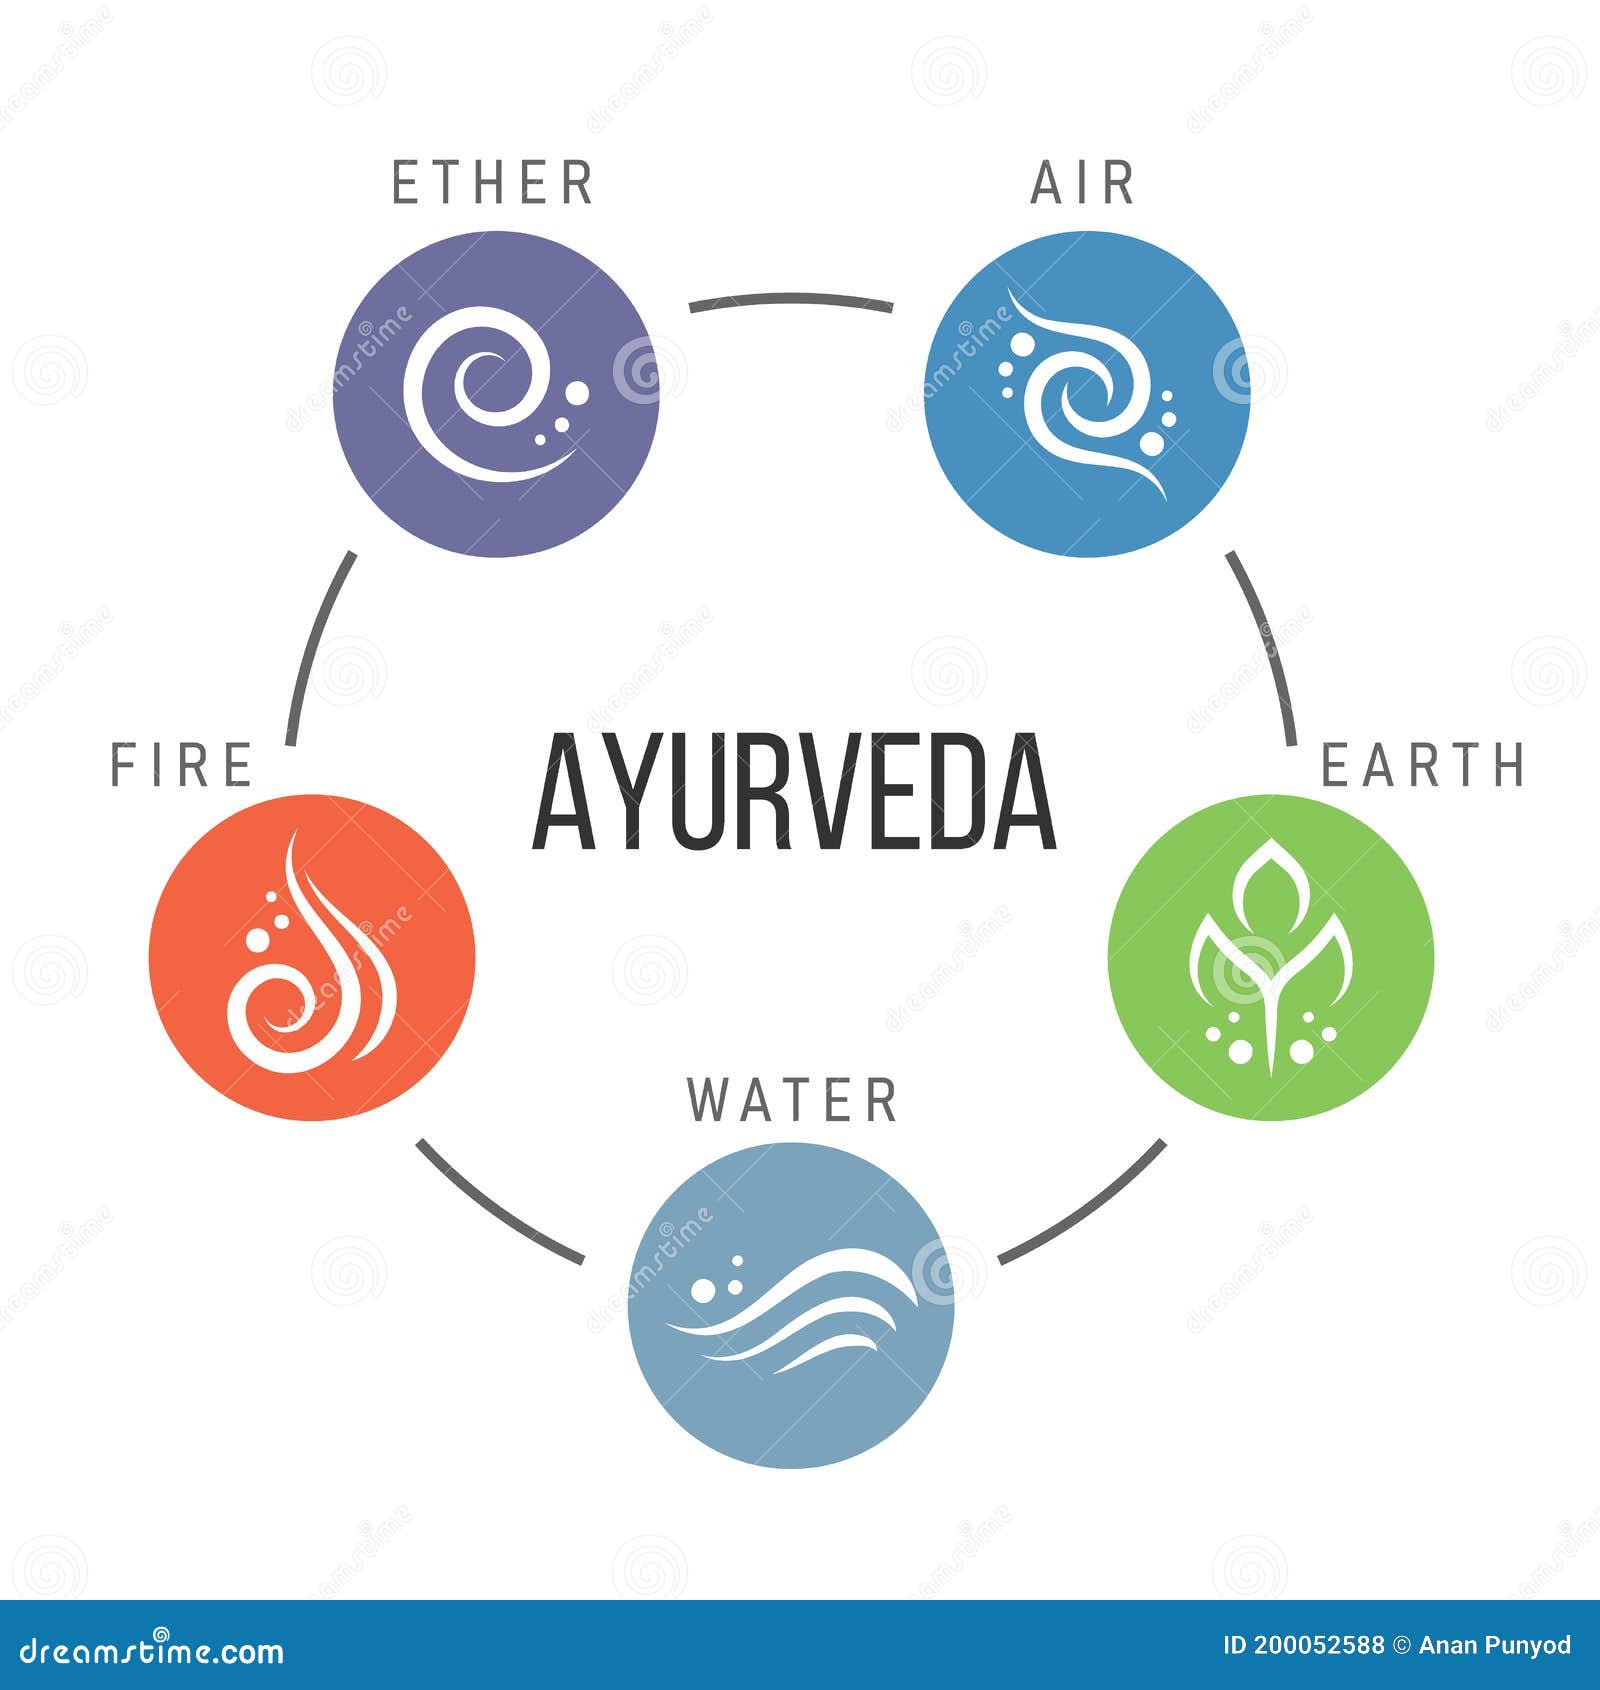 El aire en Ayurveda: Los cinco elementos - Escuela de Ayurveda de CA